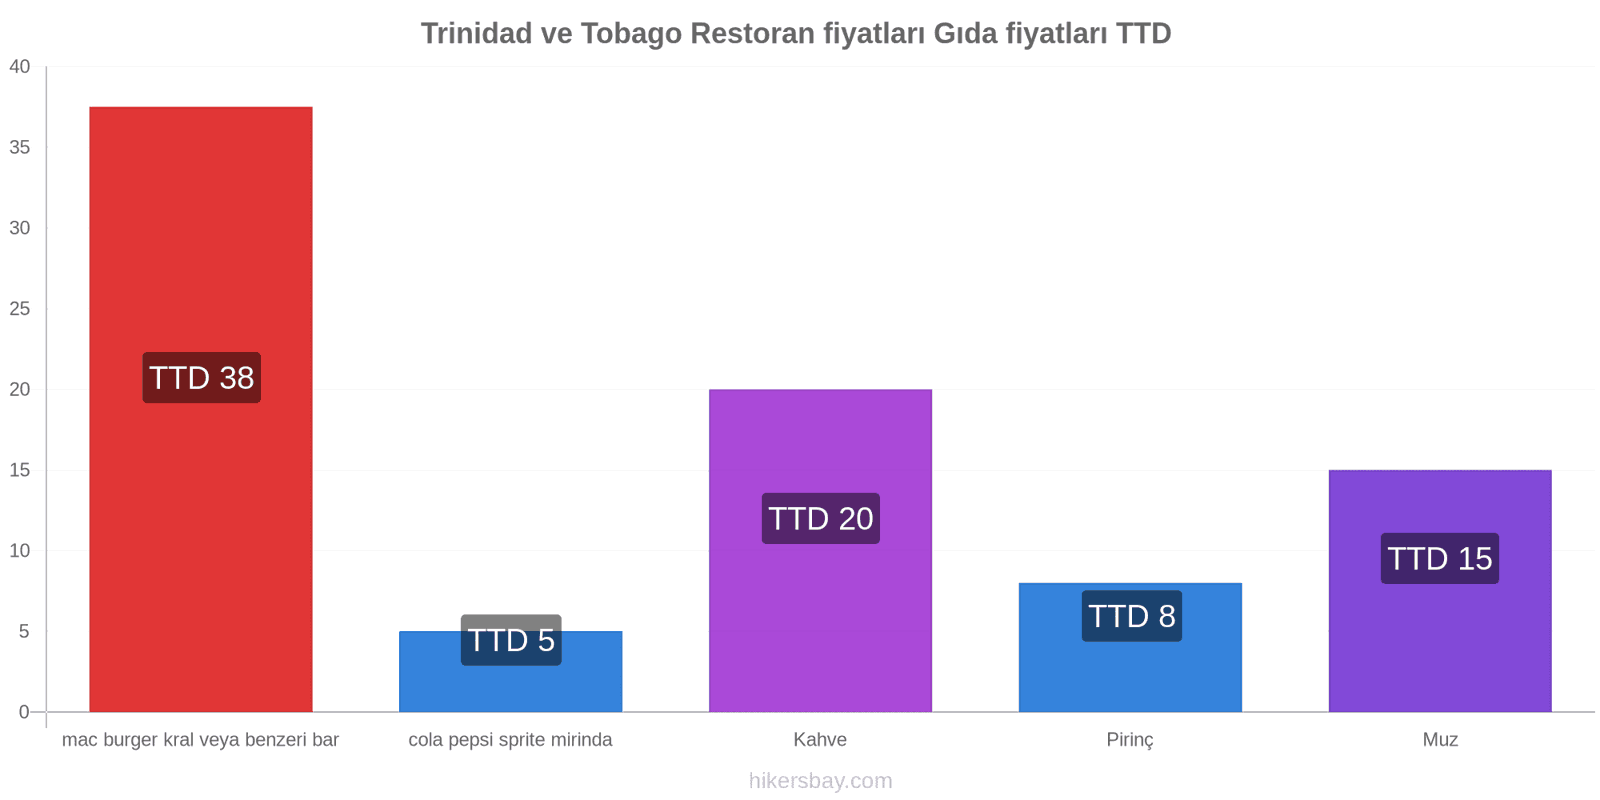 Trinidad ve Tobago fiyat değişiklikleri hikersbay.com